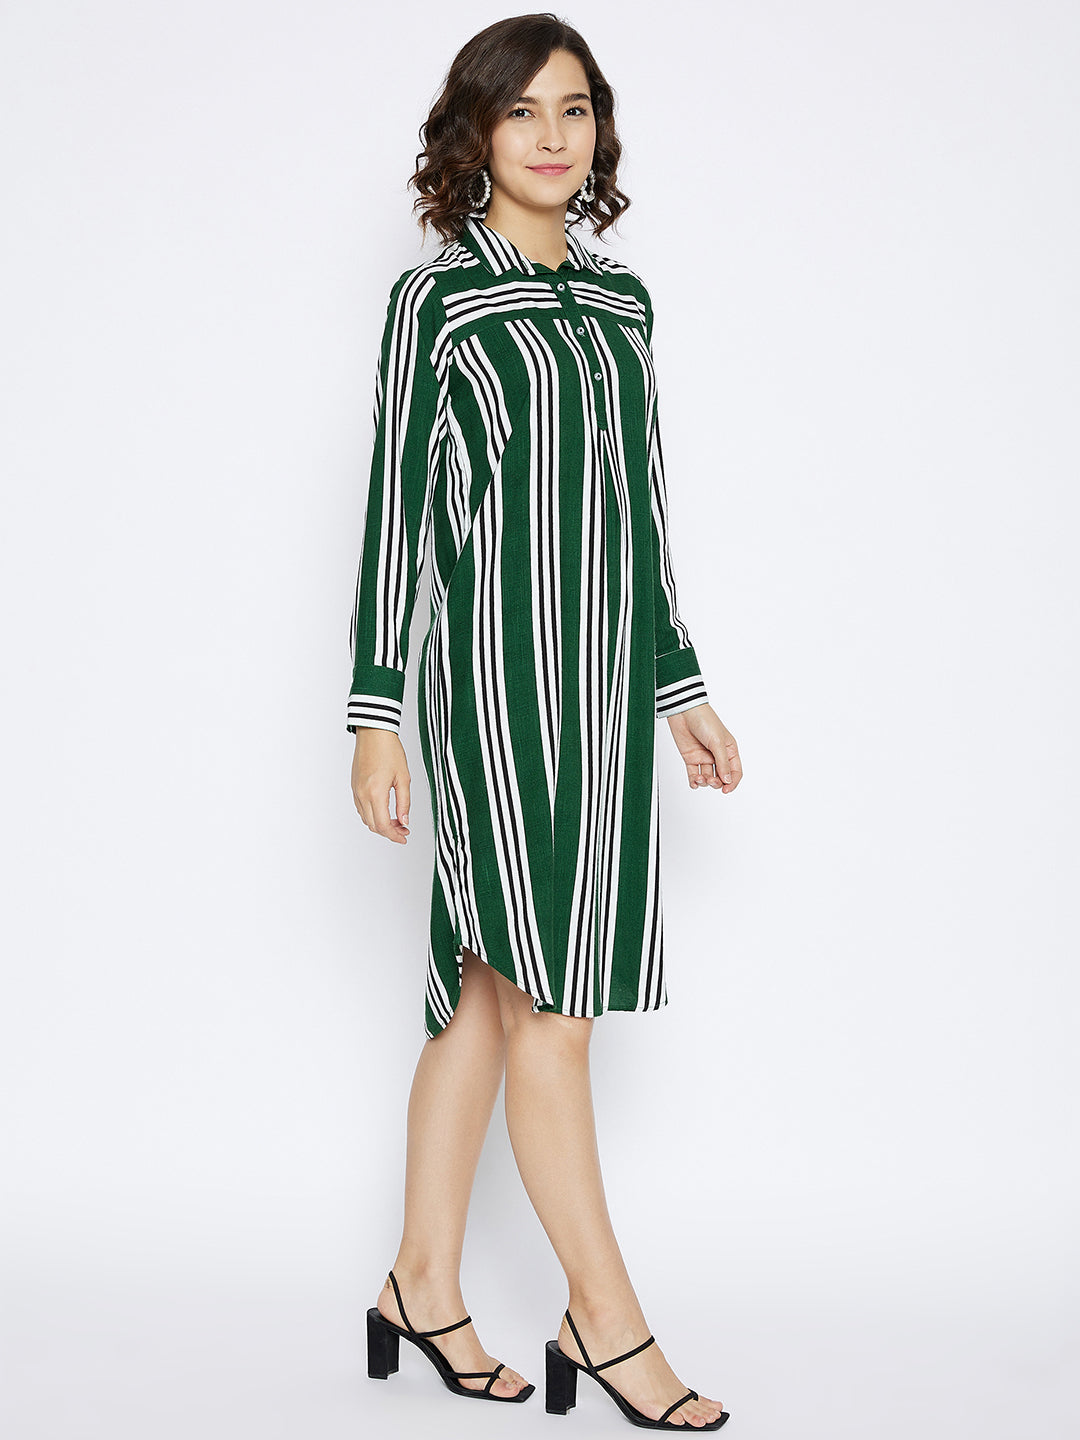 Green Striped shirt Dress - Women Dresses